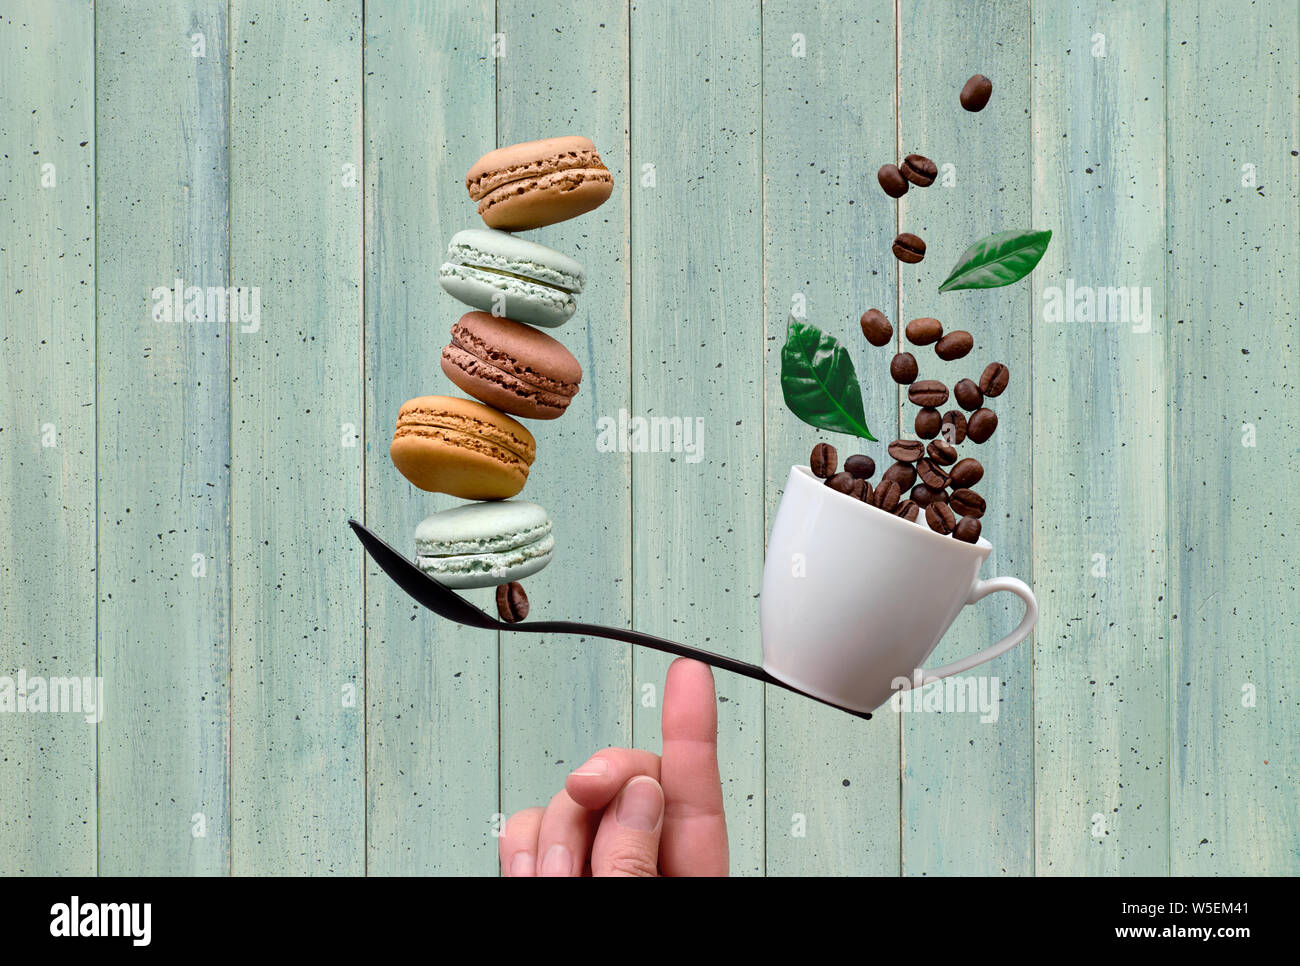 Gleichgewicht Konzept flach auf Minze farbige Holz- Hintergrund legen. Balancing Tasse Kaffee und macarons auf einem Finger Stockfoto